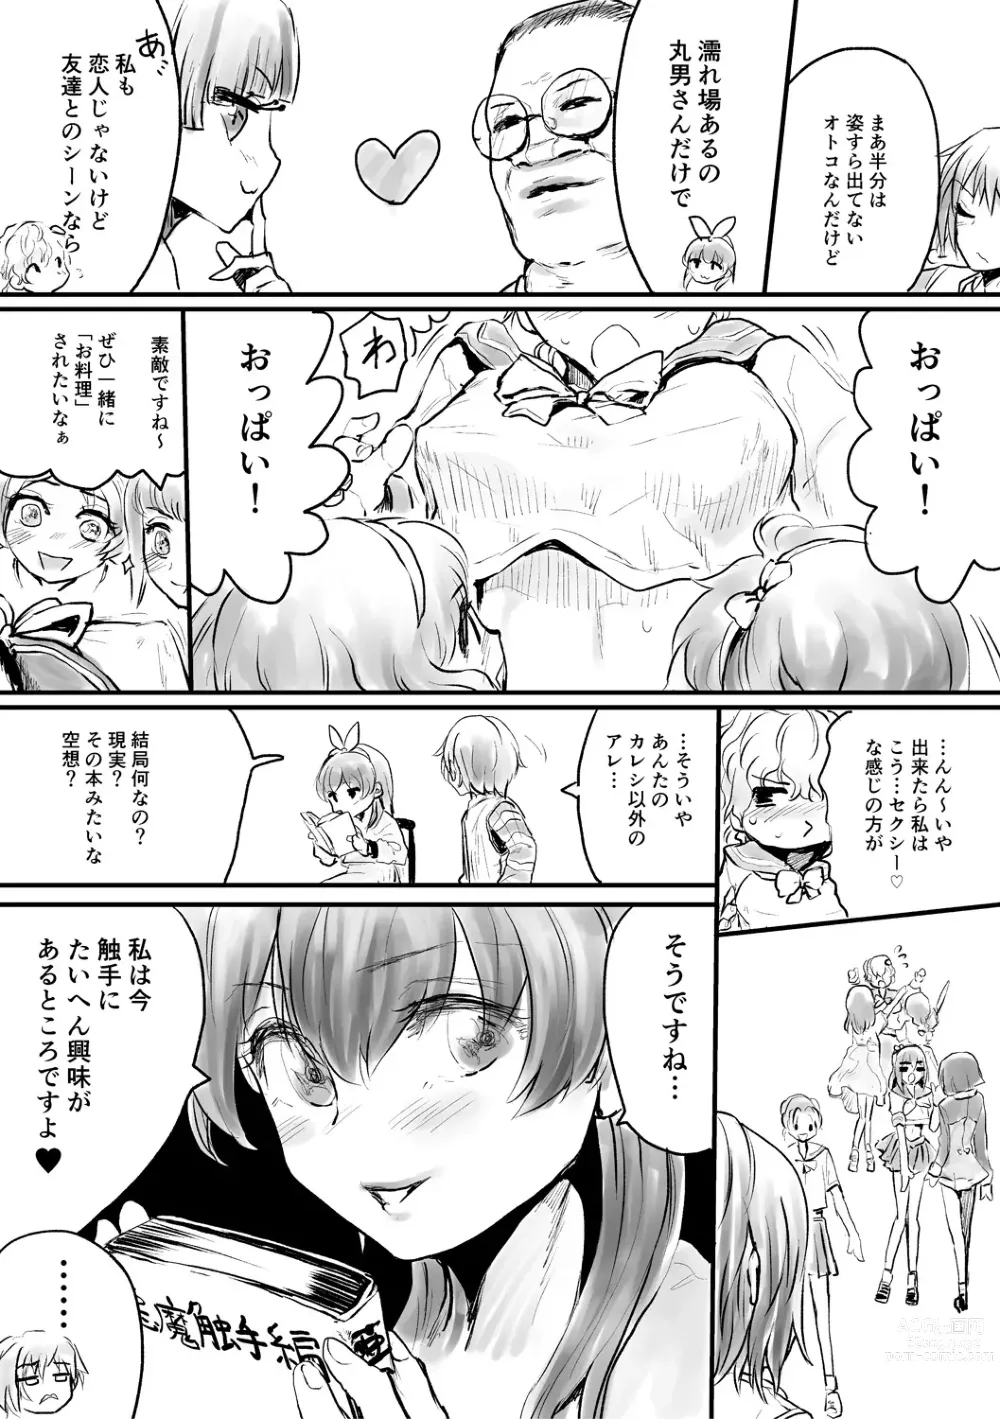 Page 205 of manga Mesu Kobi koubi Osu Bou-sama-tachi ni Kansha no Koshi Furi